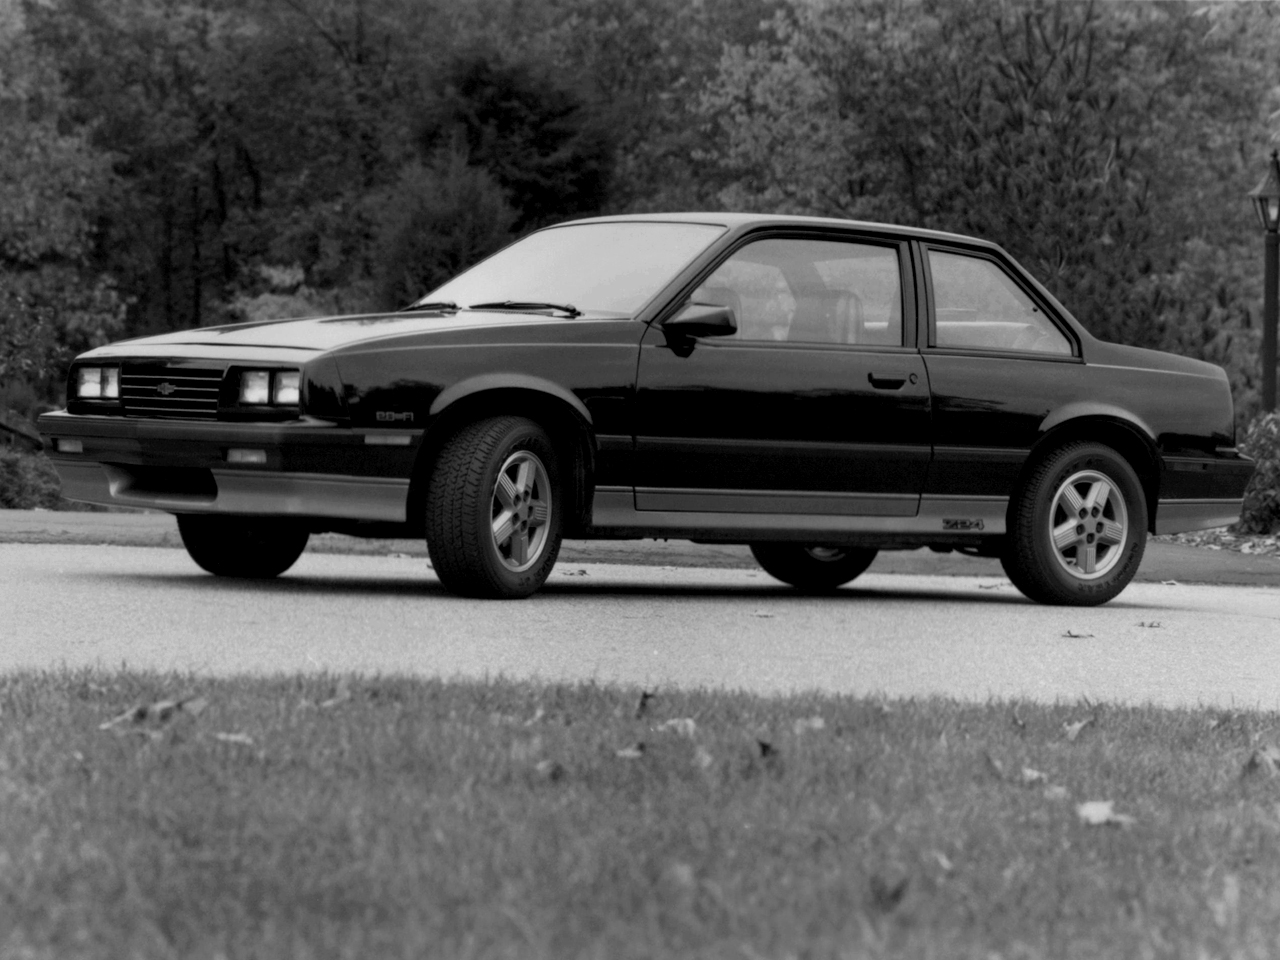 Chevrolet cavalier 1987 photo - 6